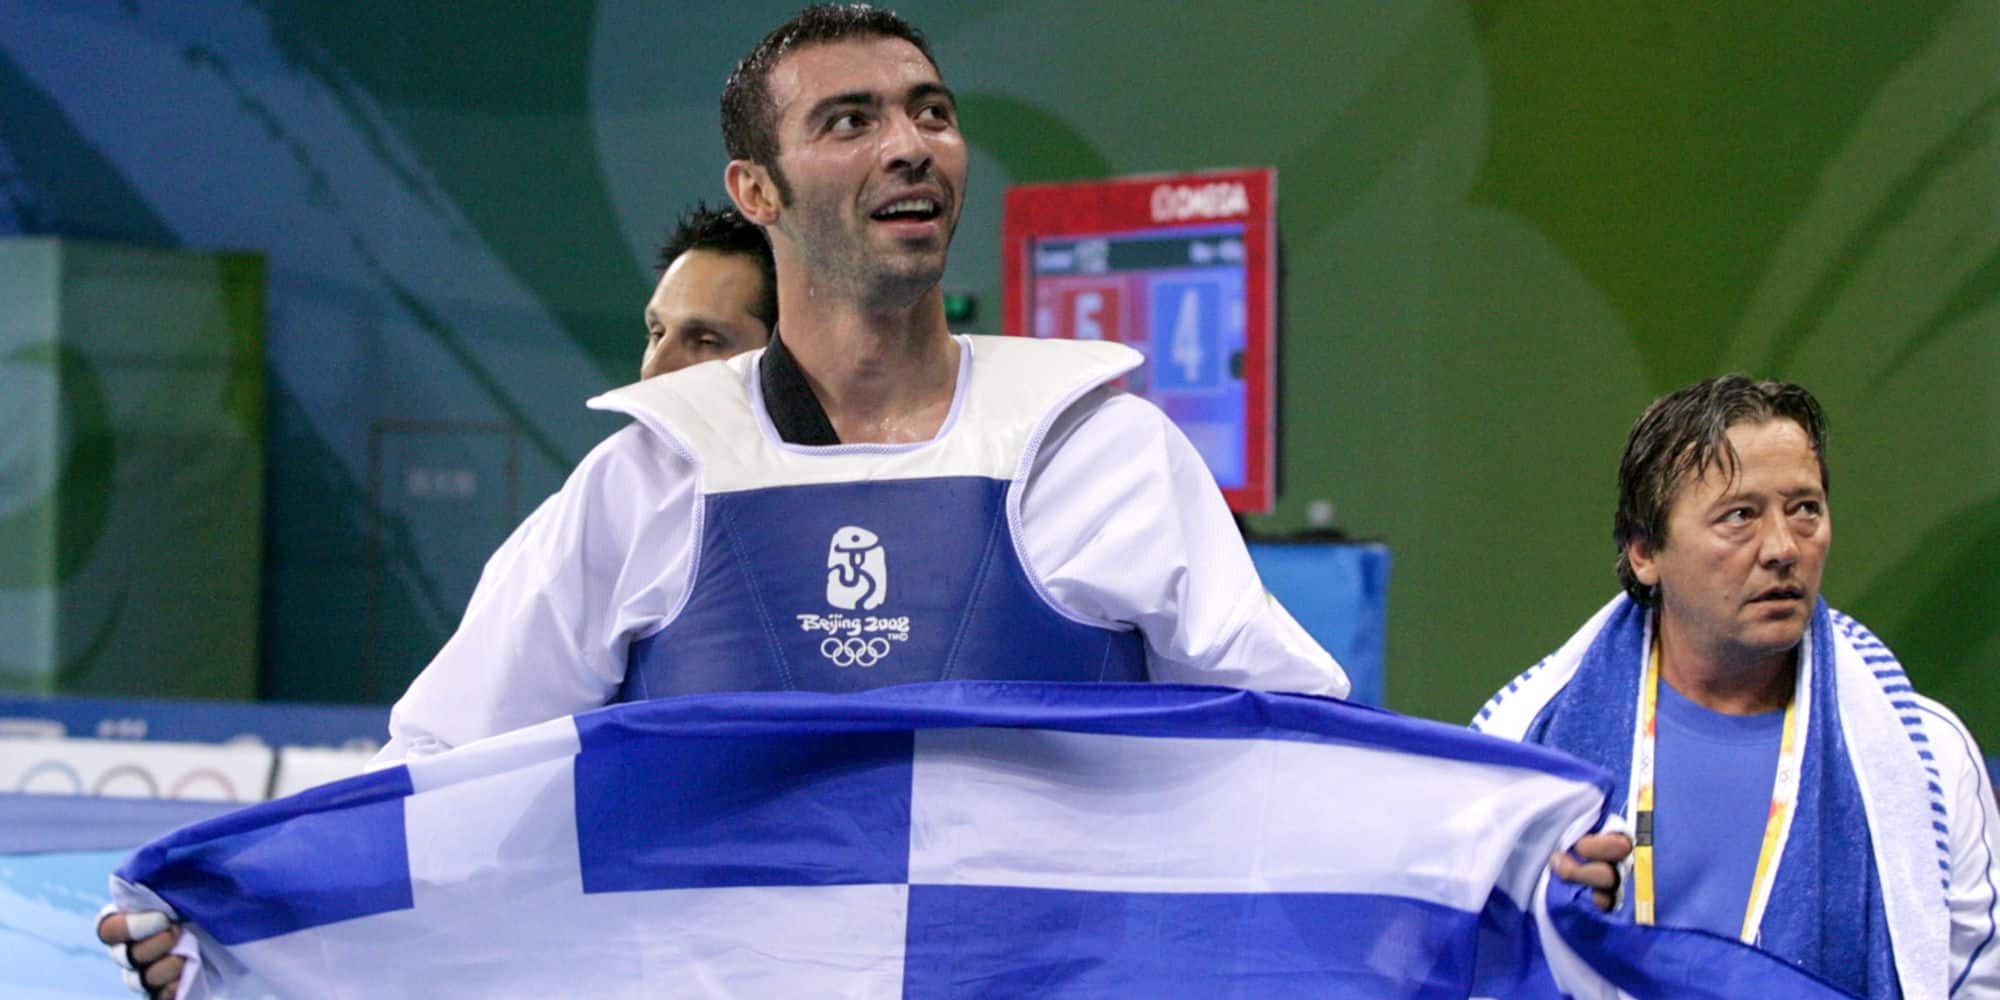 Ο Αλέξανδρος Νικολαΐδης με την ελληνική σημαία